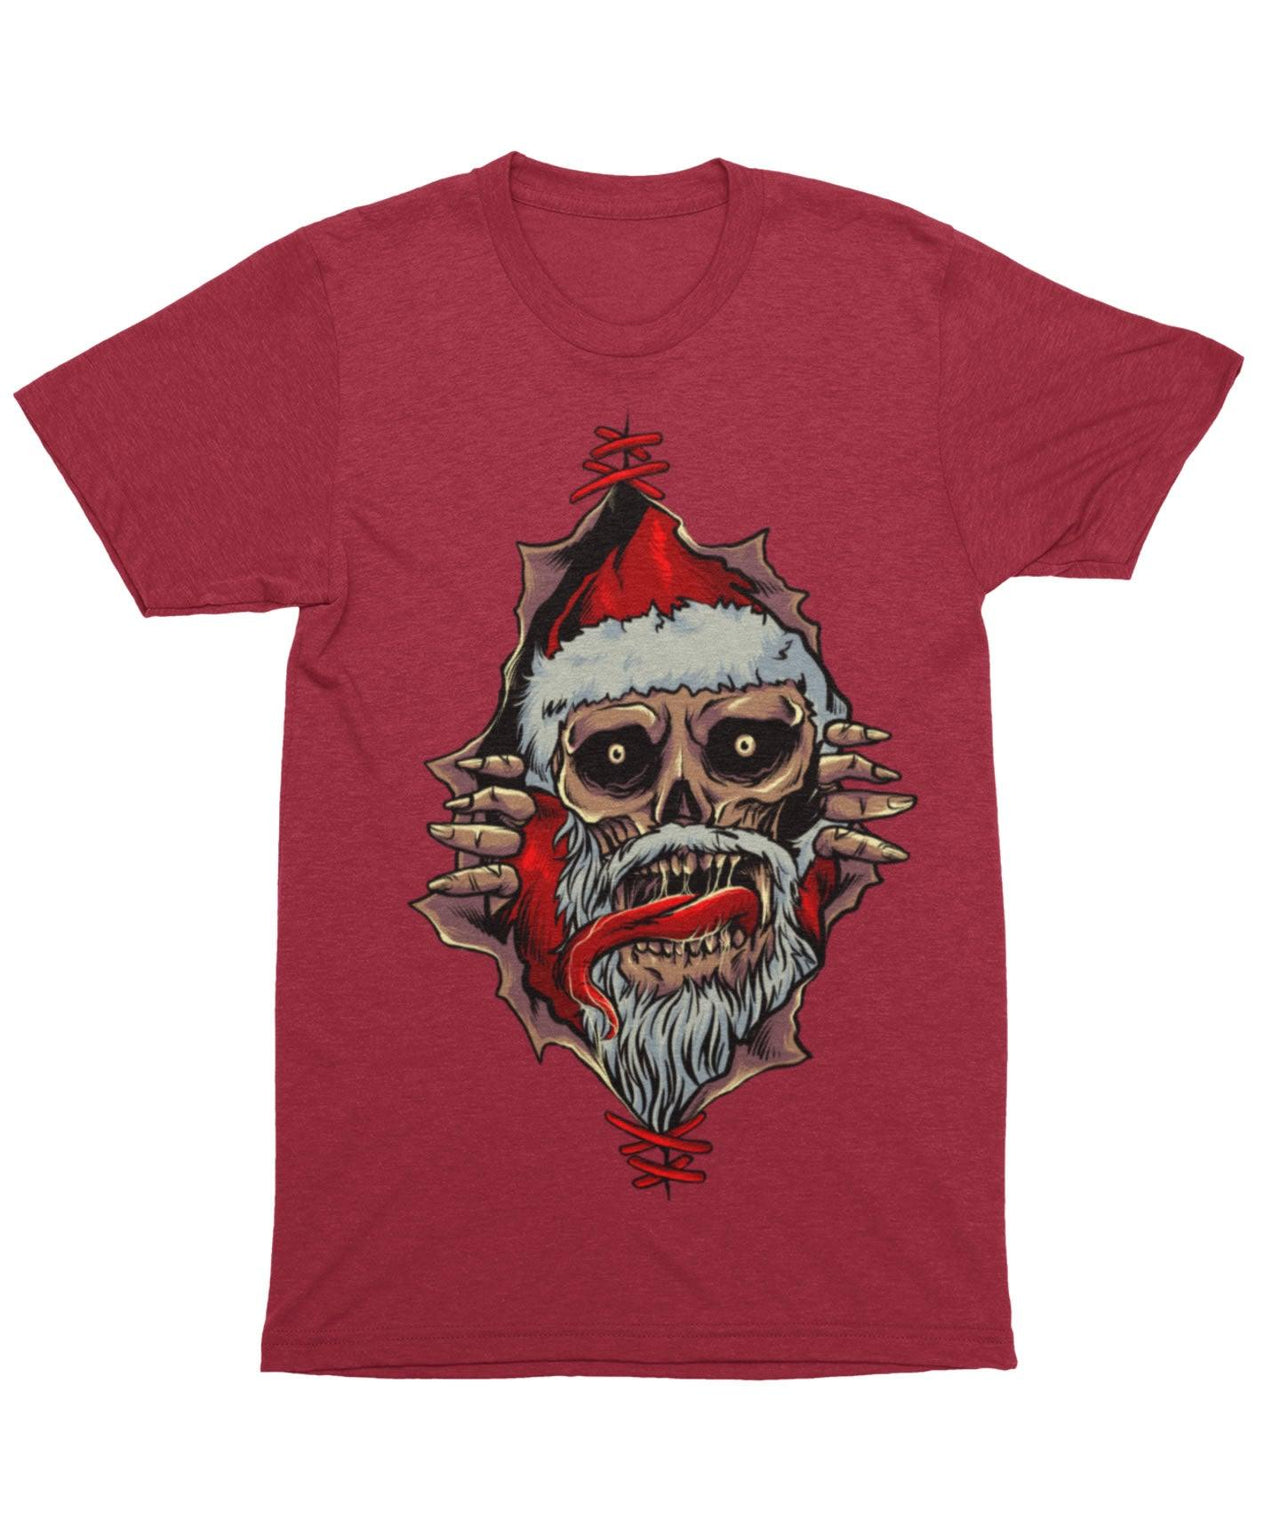 Santa Skull Peek-A-Boo Unisex Christmas T-Shirt For Men 8Ball